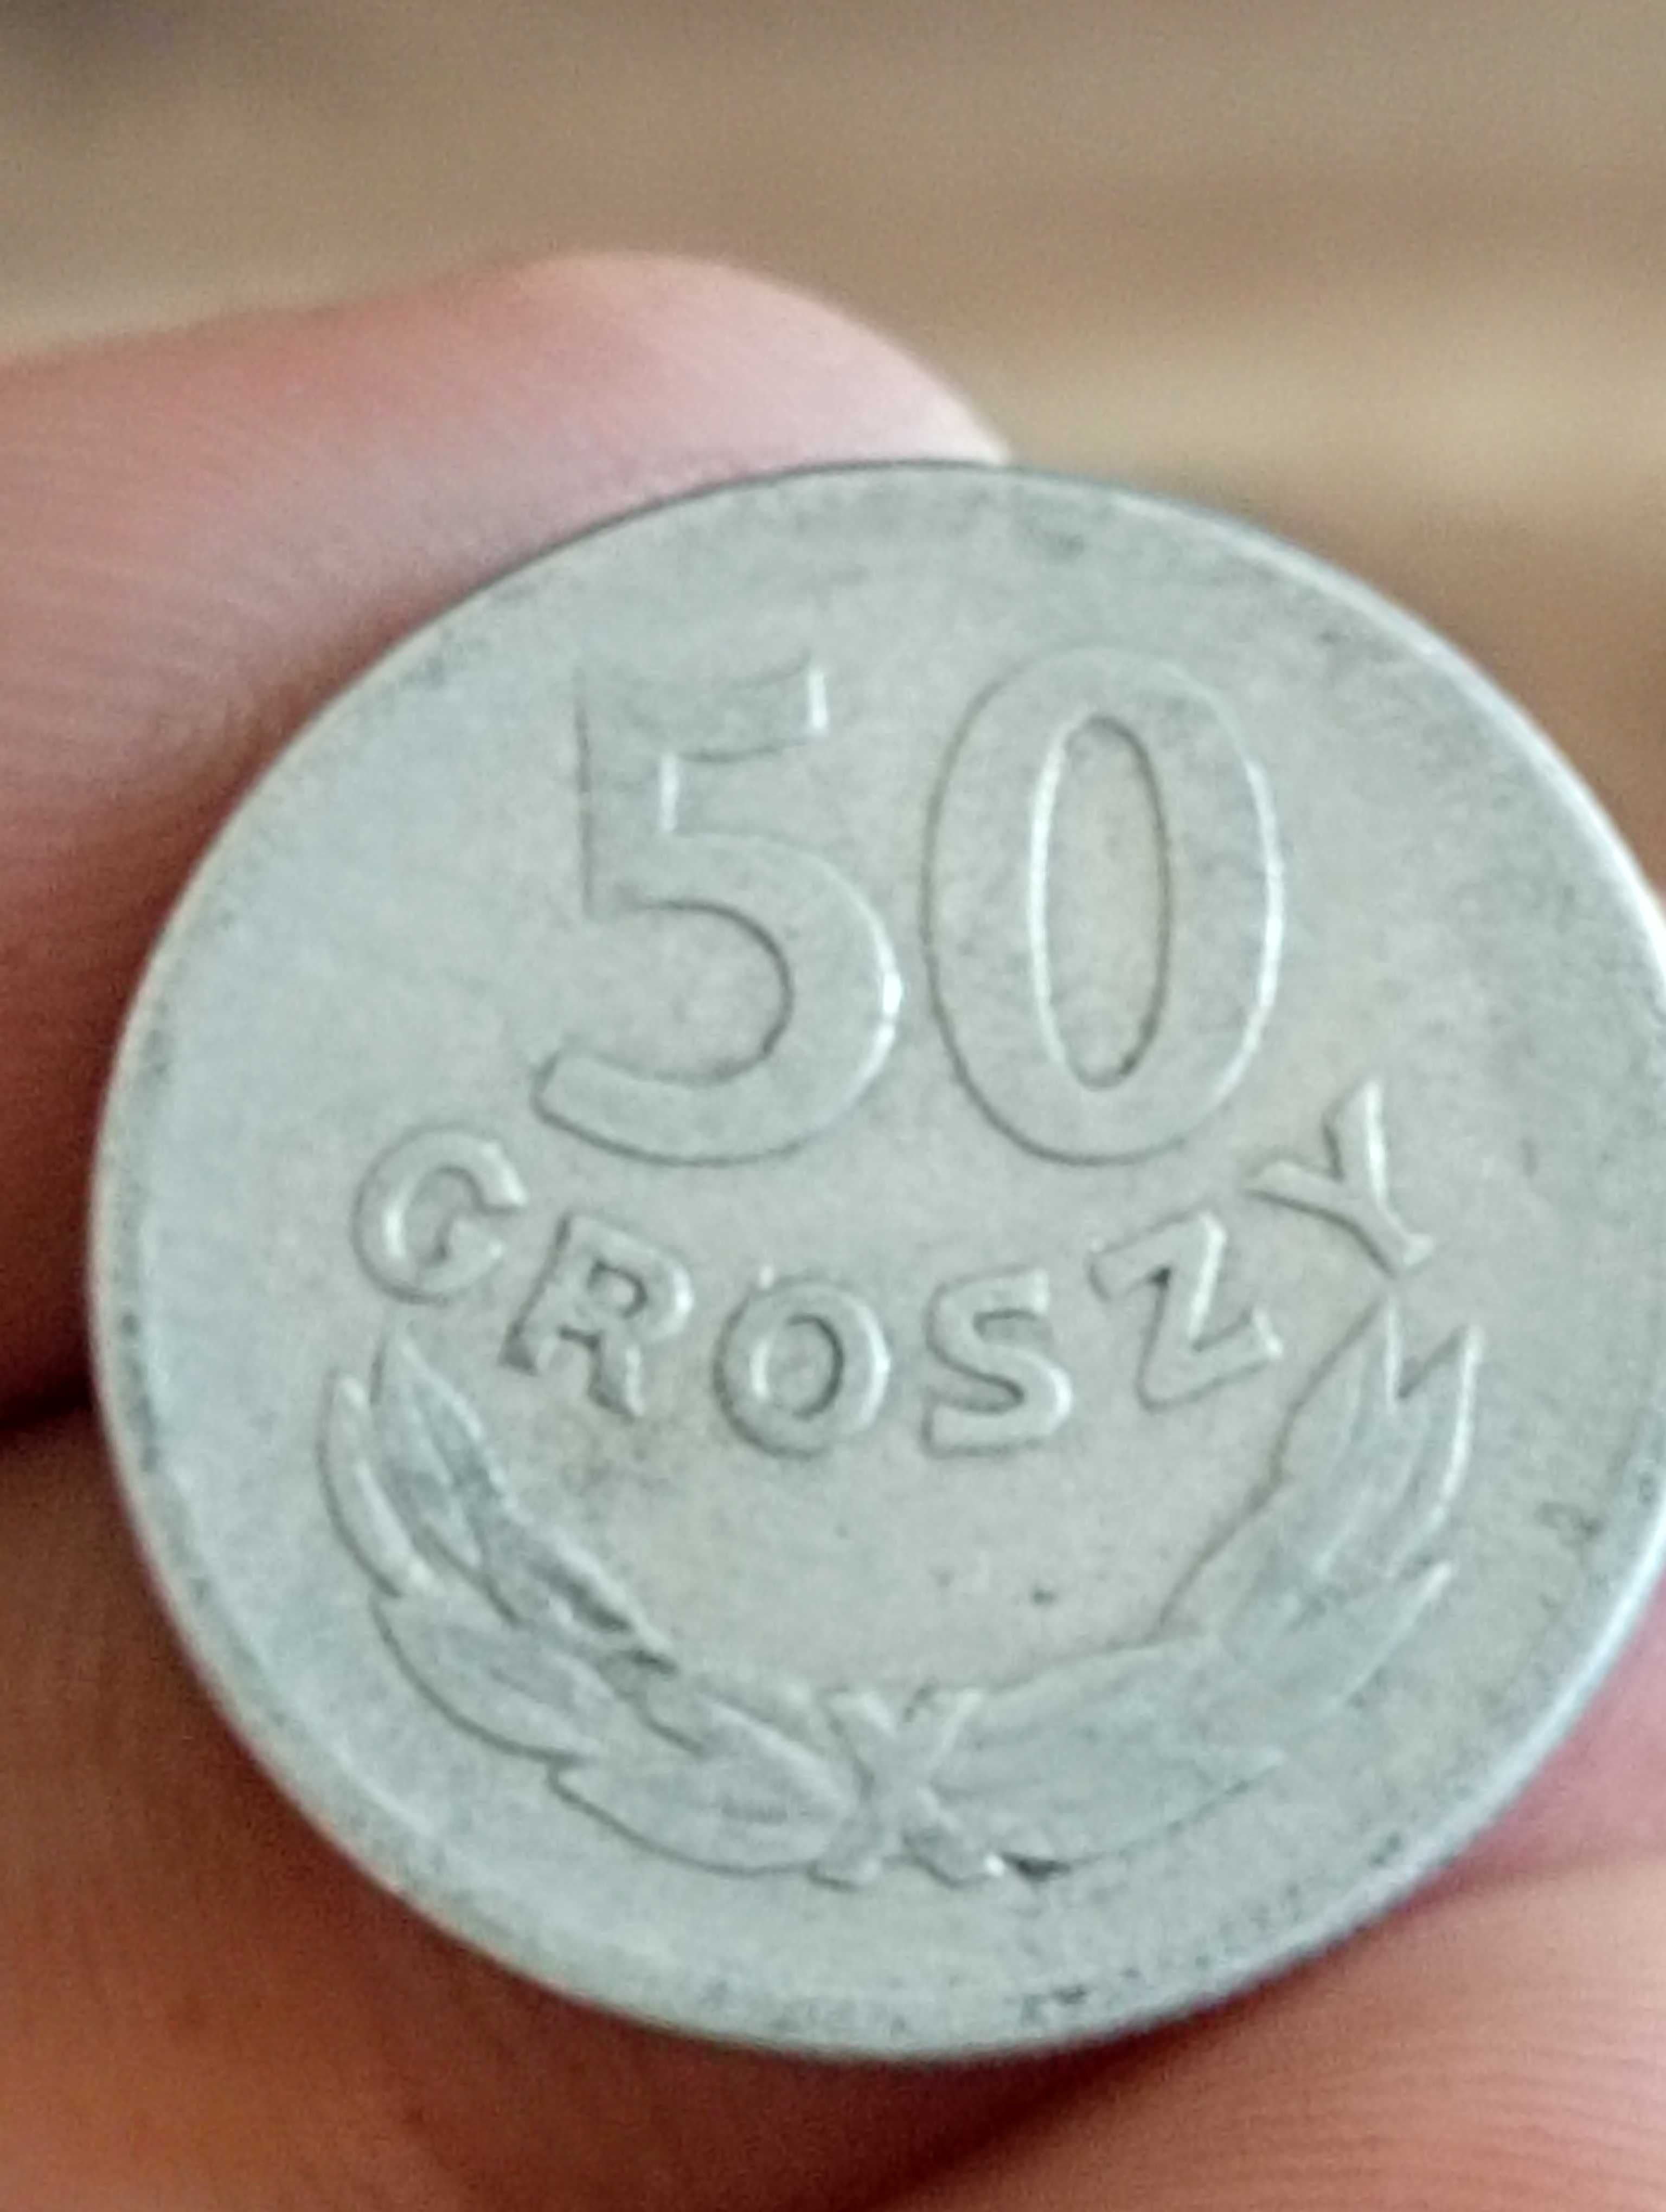 Sprzedam monete cxz 50 groszy 1965 rok